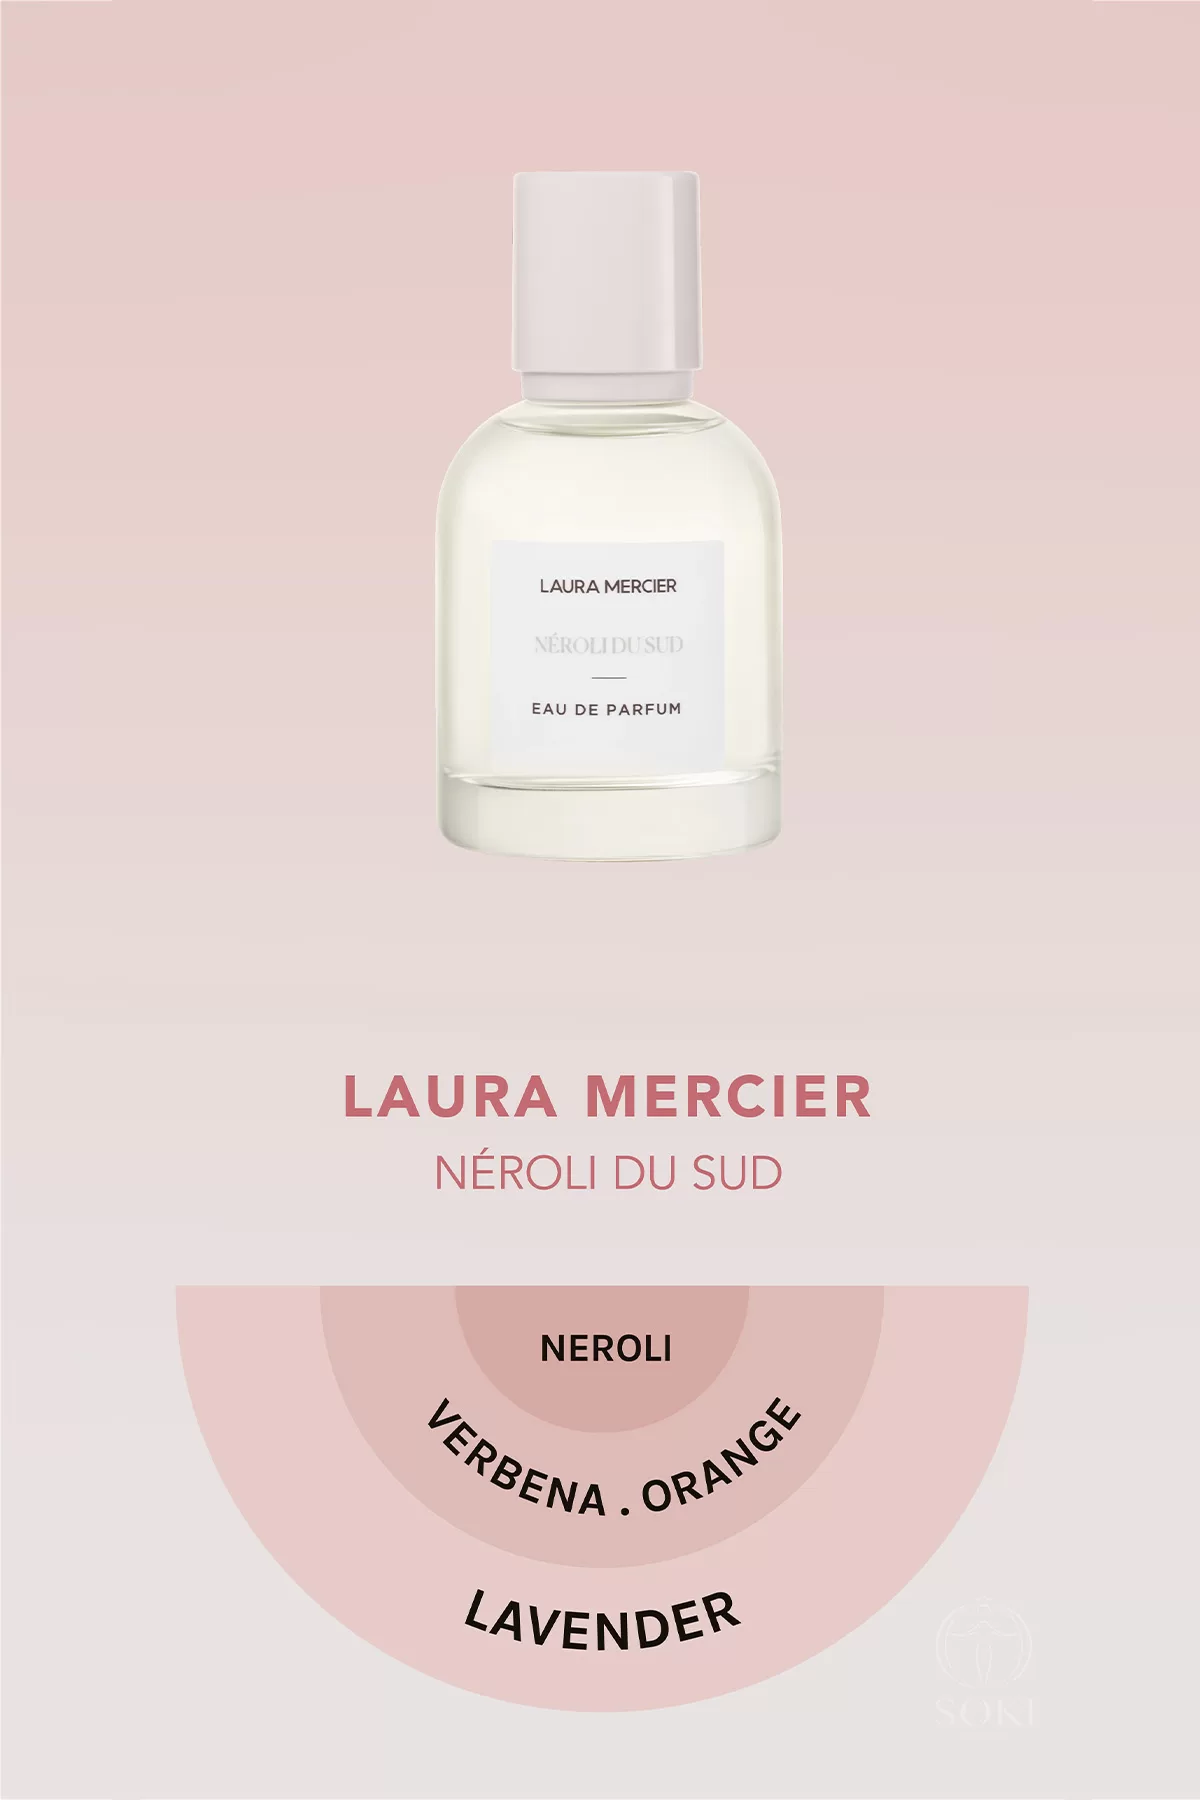 
Laura Mercier Néroli du Sud Eau de Parfum